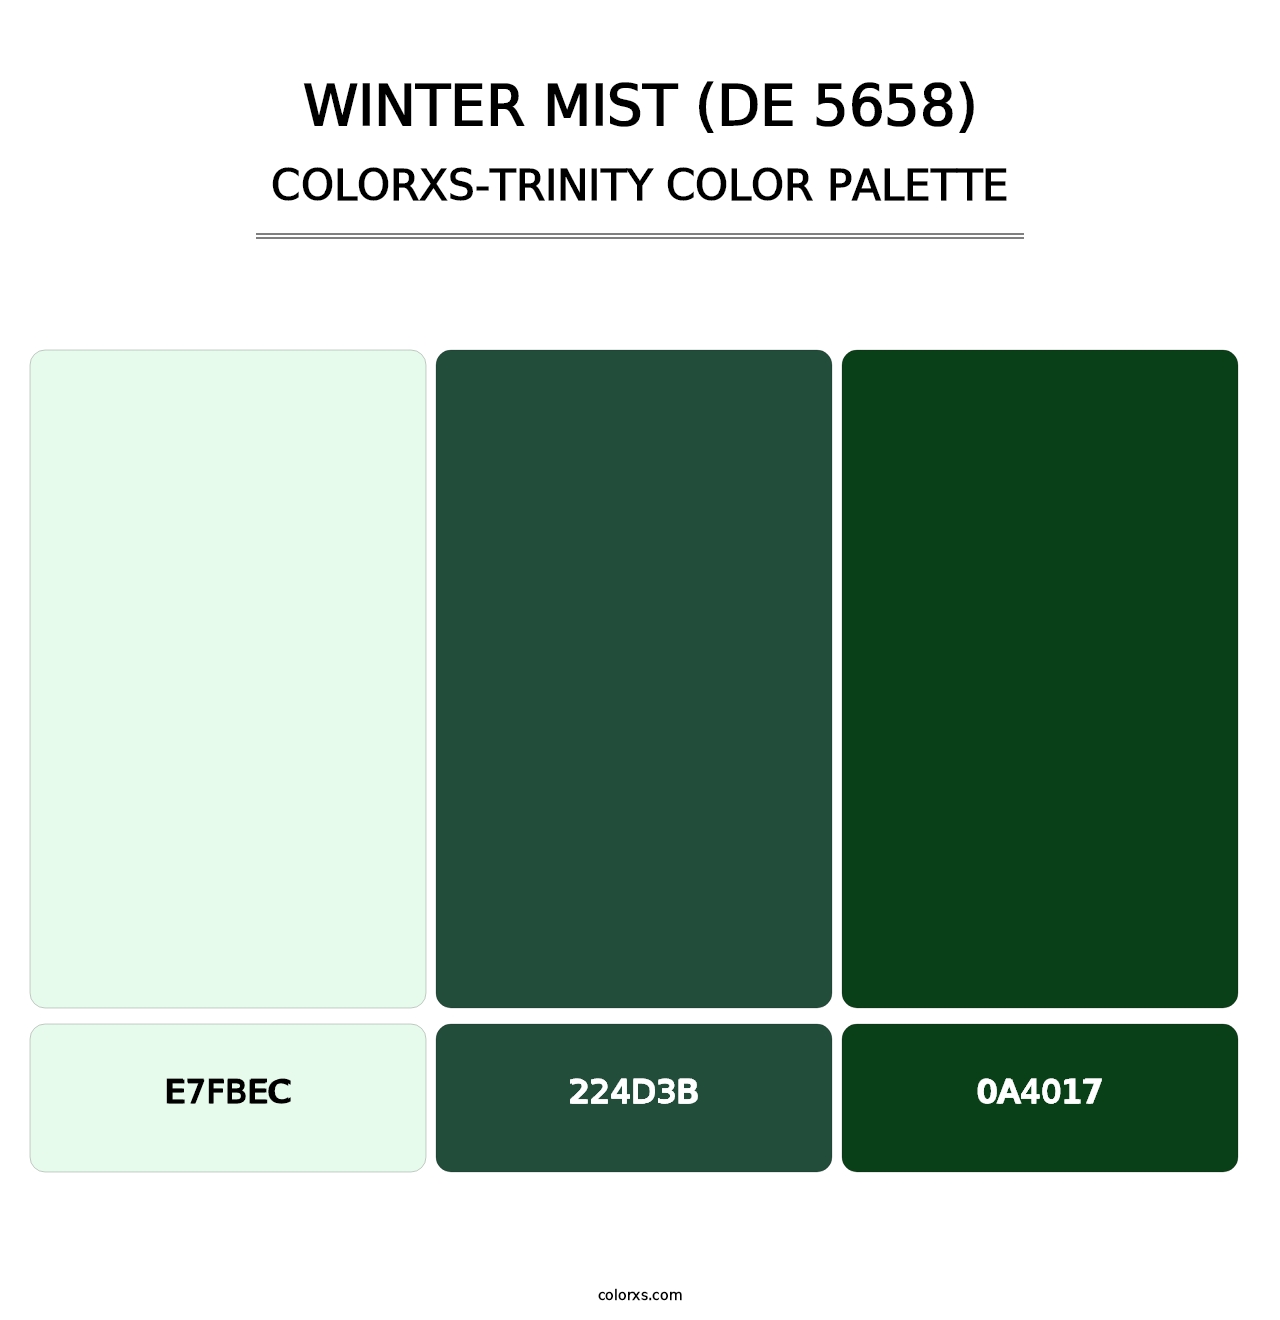 Winter Mist (DE 5658) - Colorxs Trinity Palette